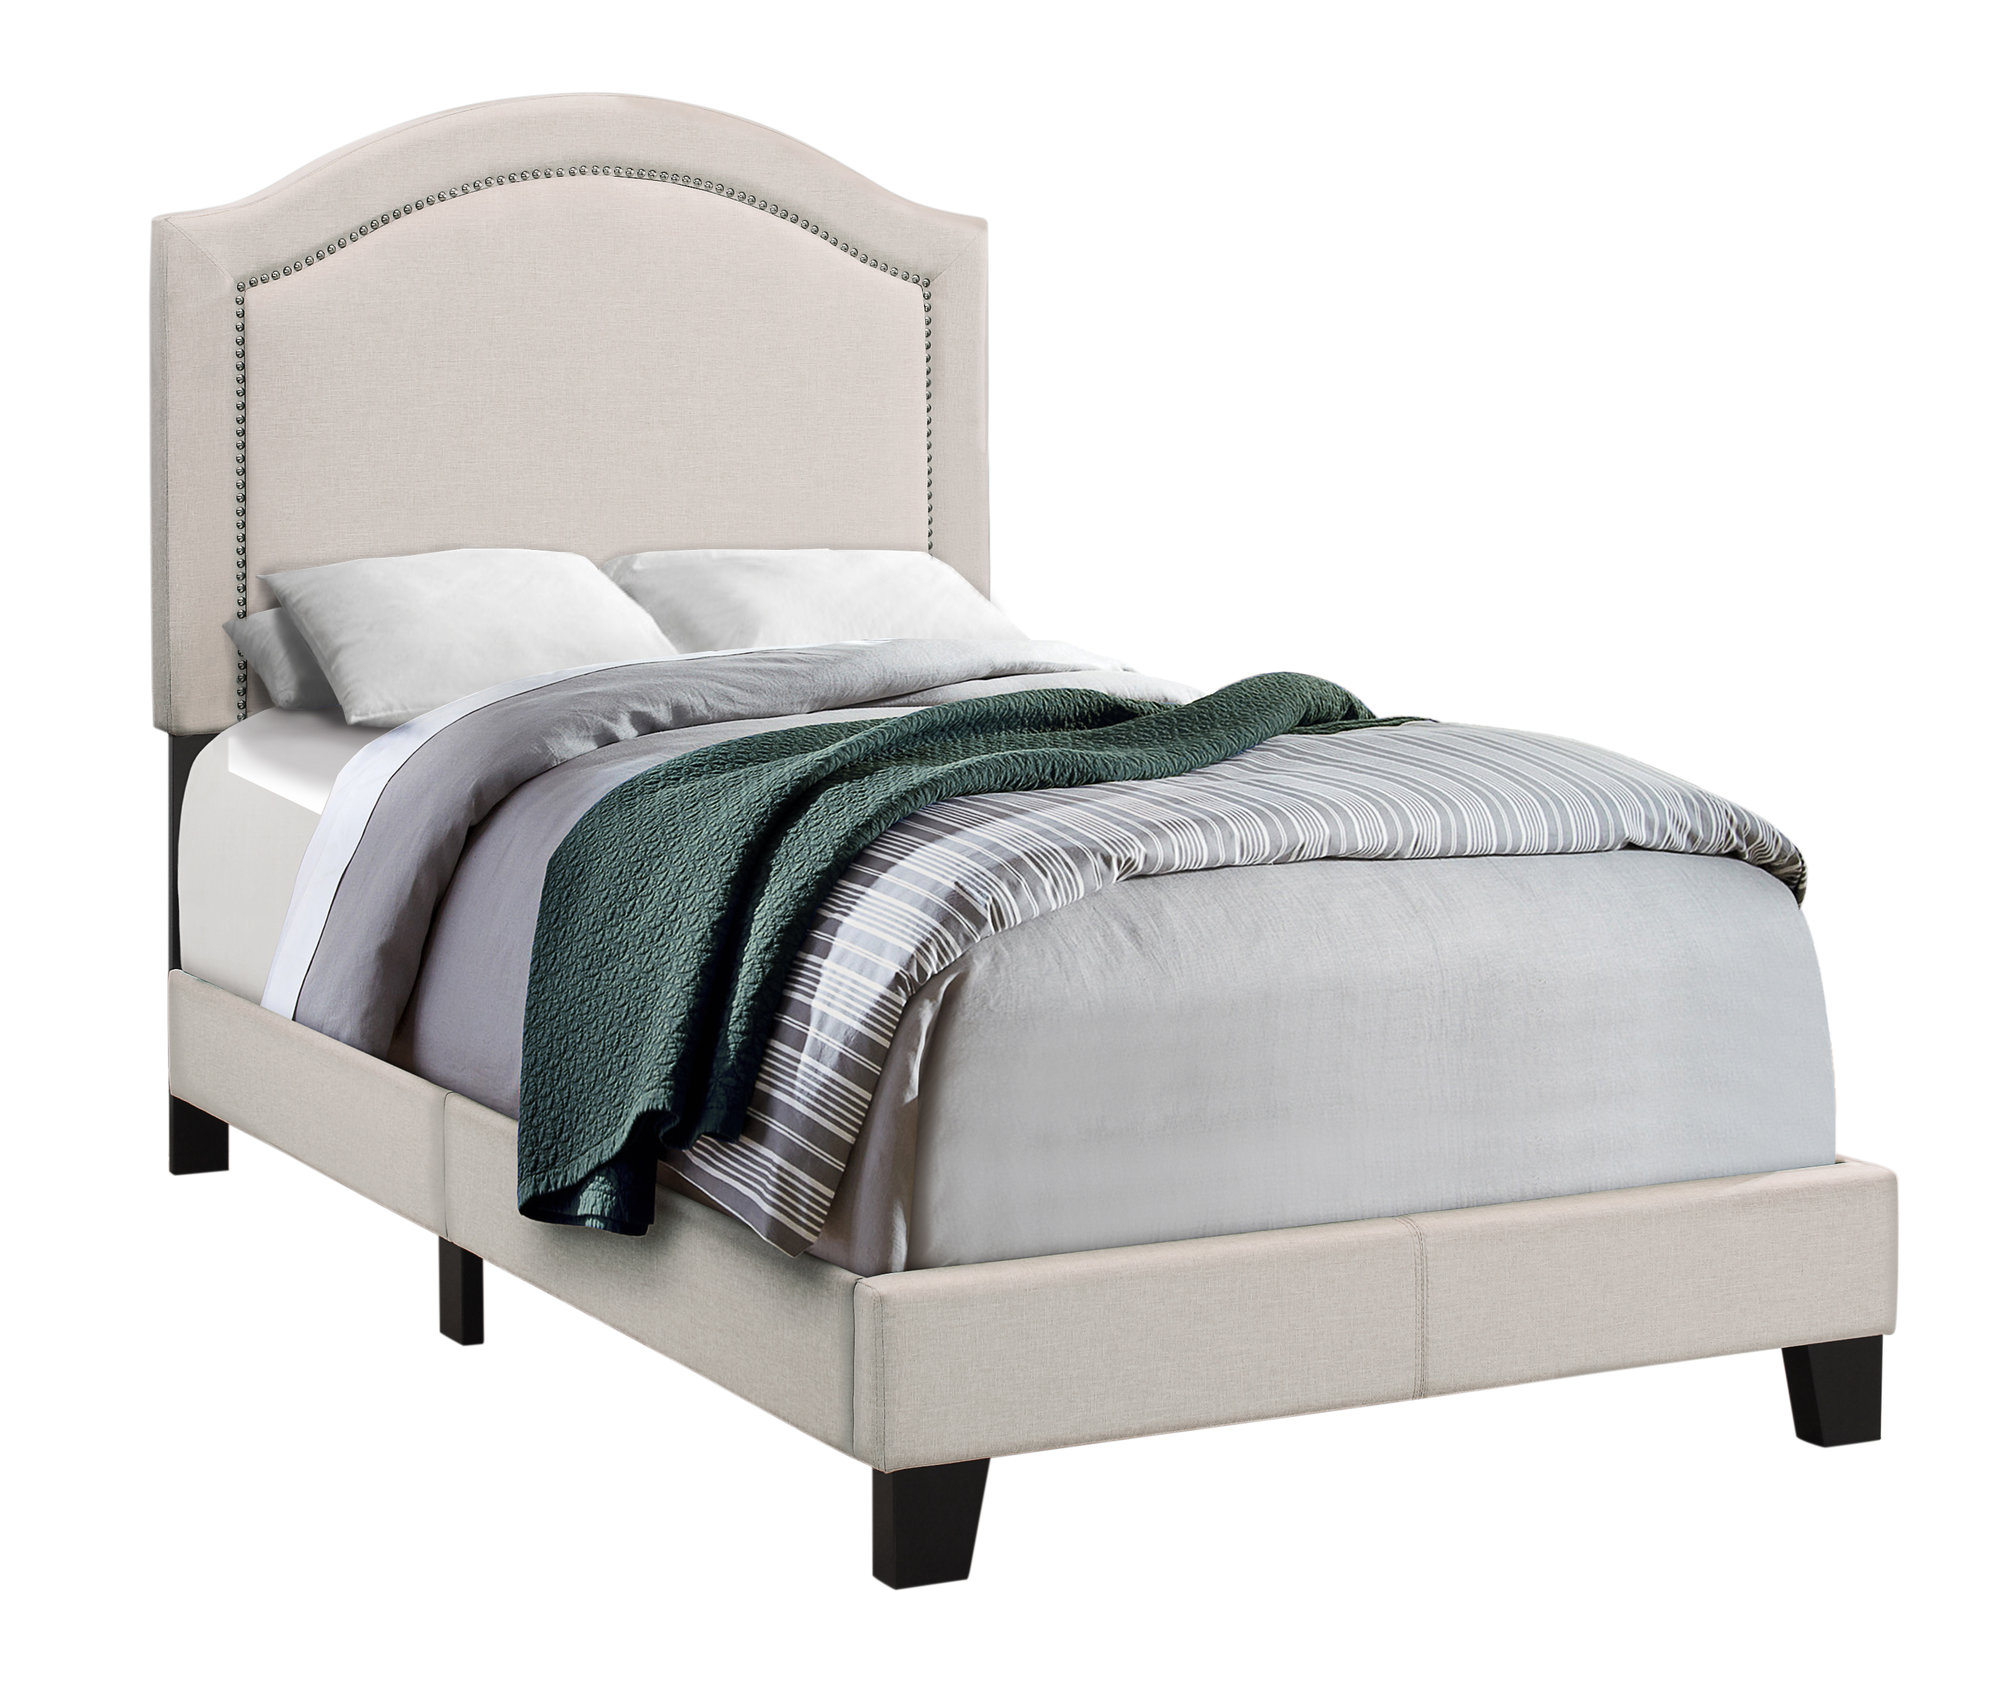 43" x 80.25" x 51.5" Beige Foam Solid Wood Linen Twin Size Bed